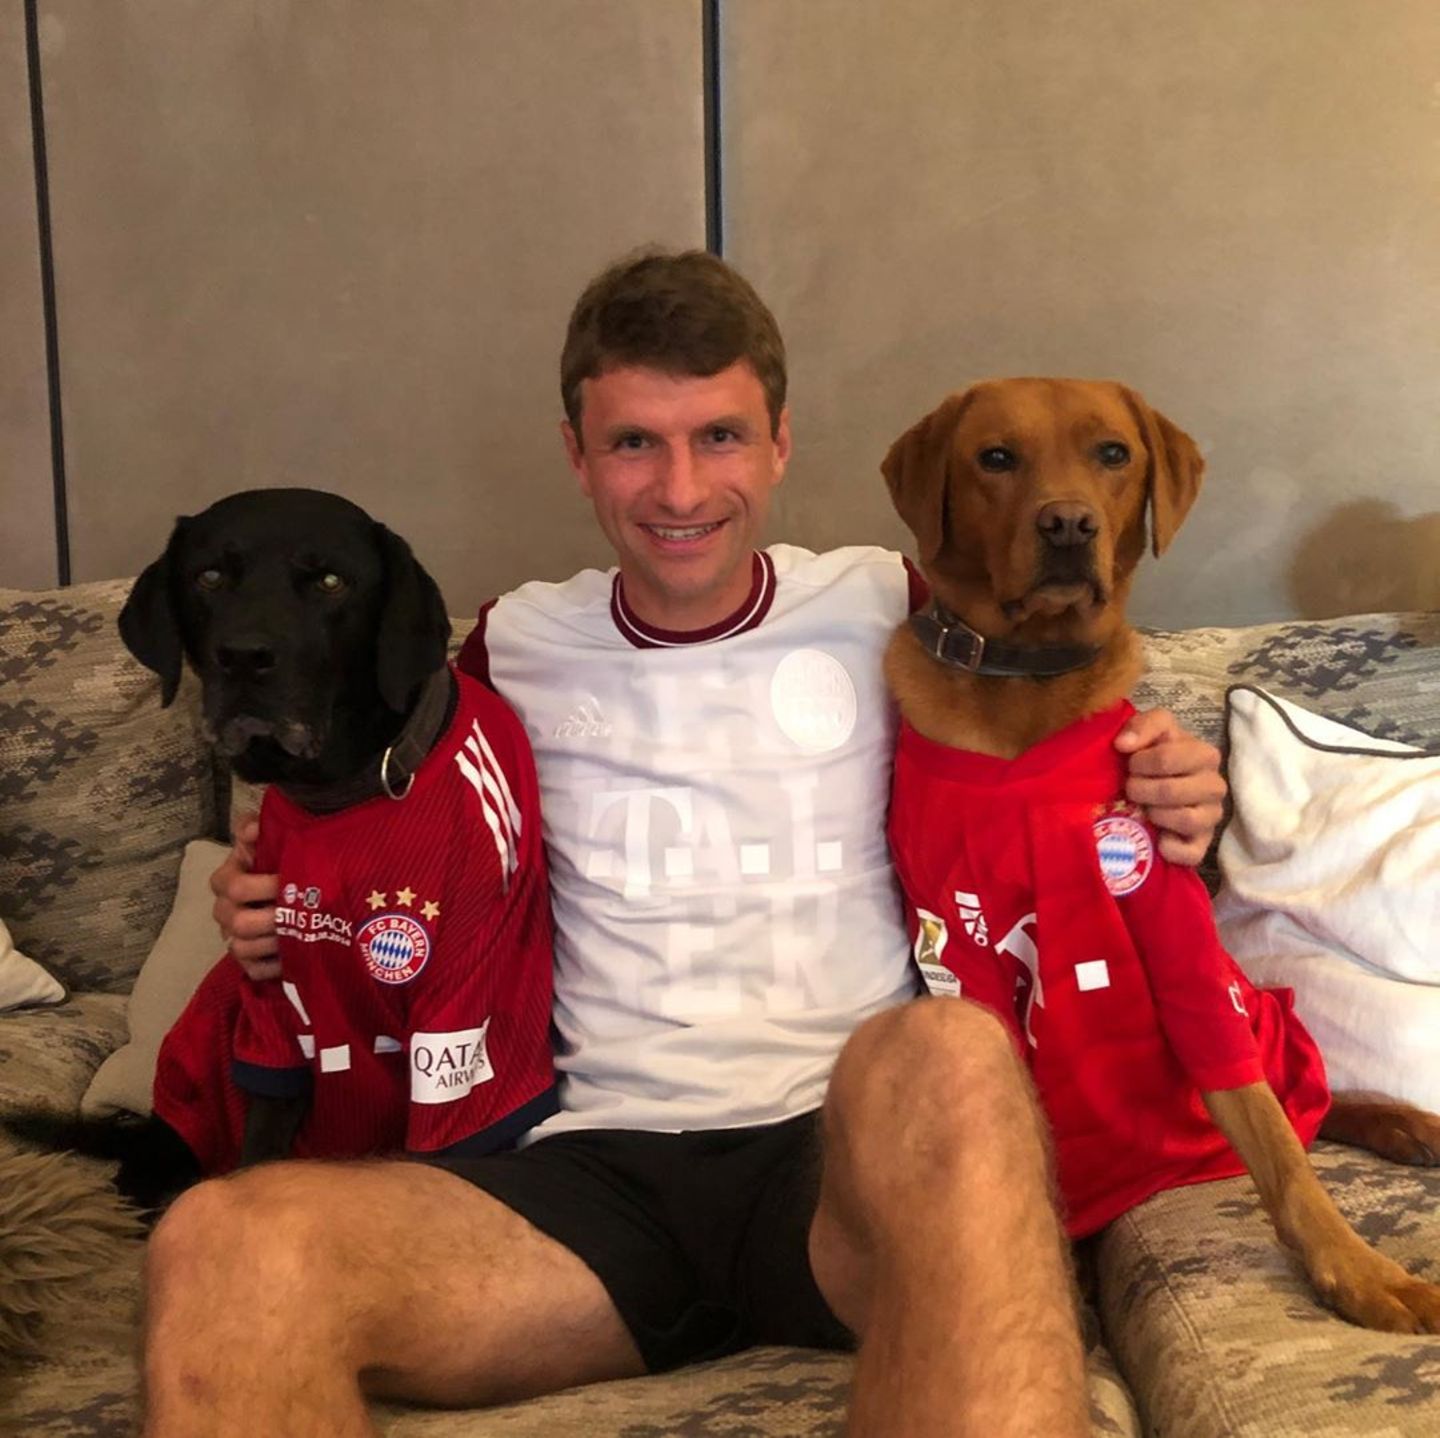 13. Juni 2020  Angefeuert wird im FC Bayern-Dress. Kurzerhand bekommen auch die Hunde Micky und Murmel ein Trikot verpasst. In der Pause postet Müller auf Instagram: "Viel Glück für die zweite Halbzeit, Amigos".